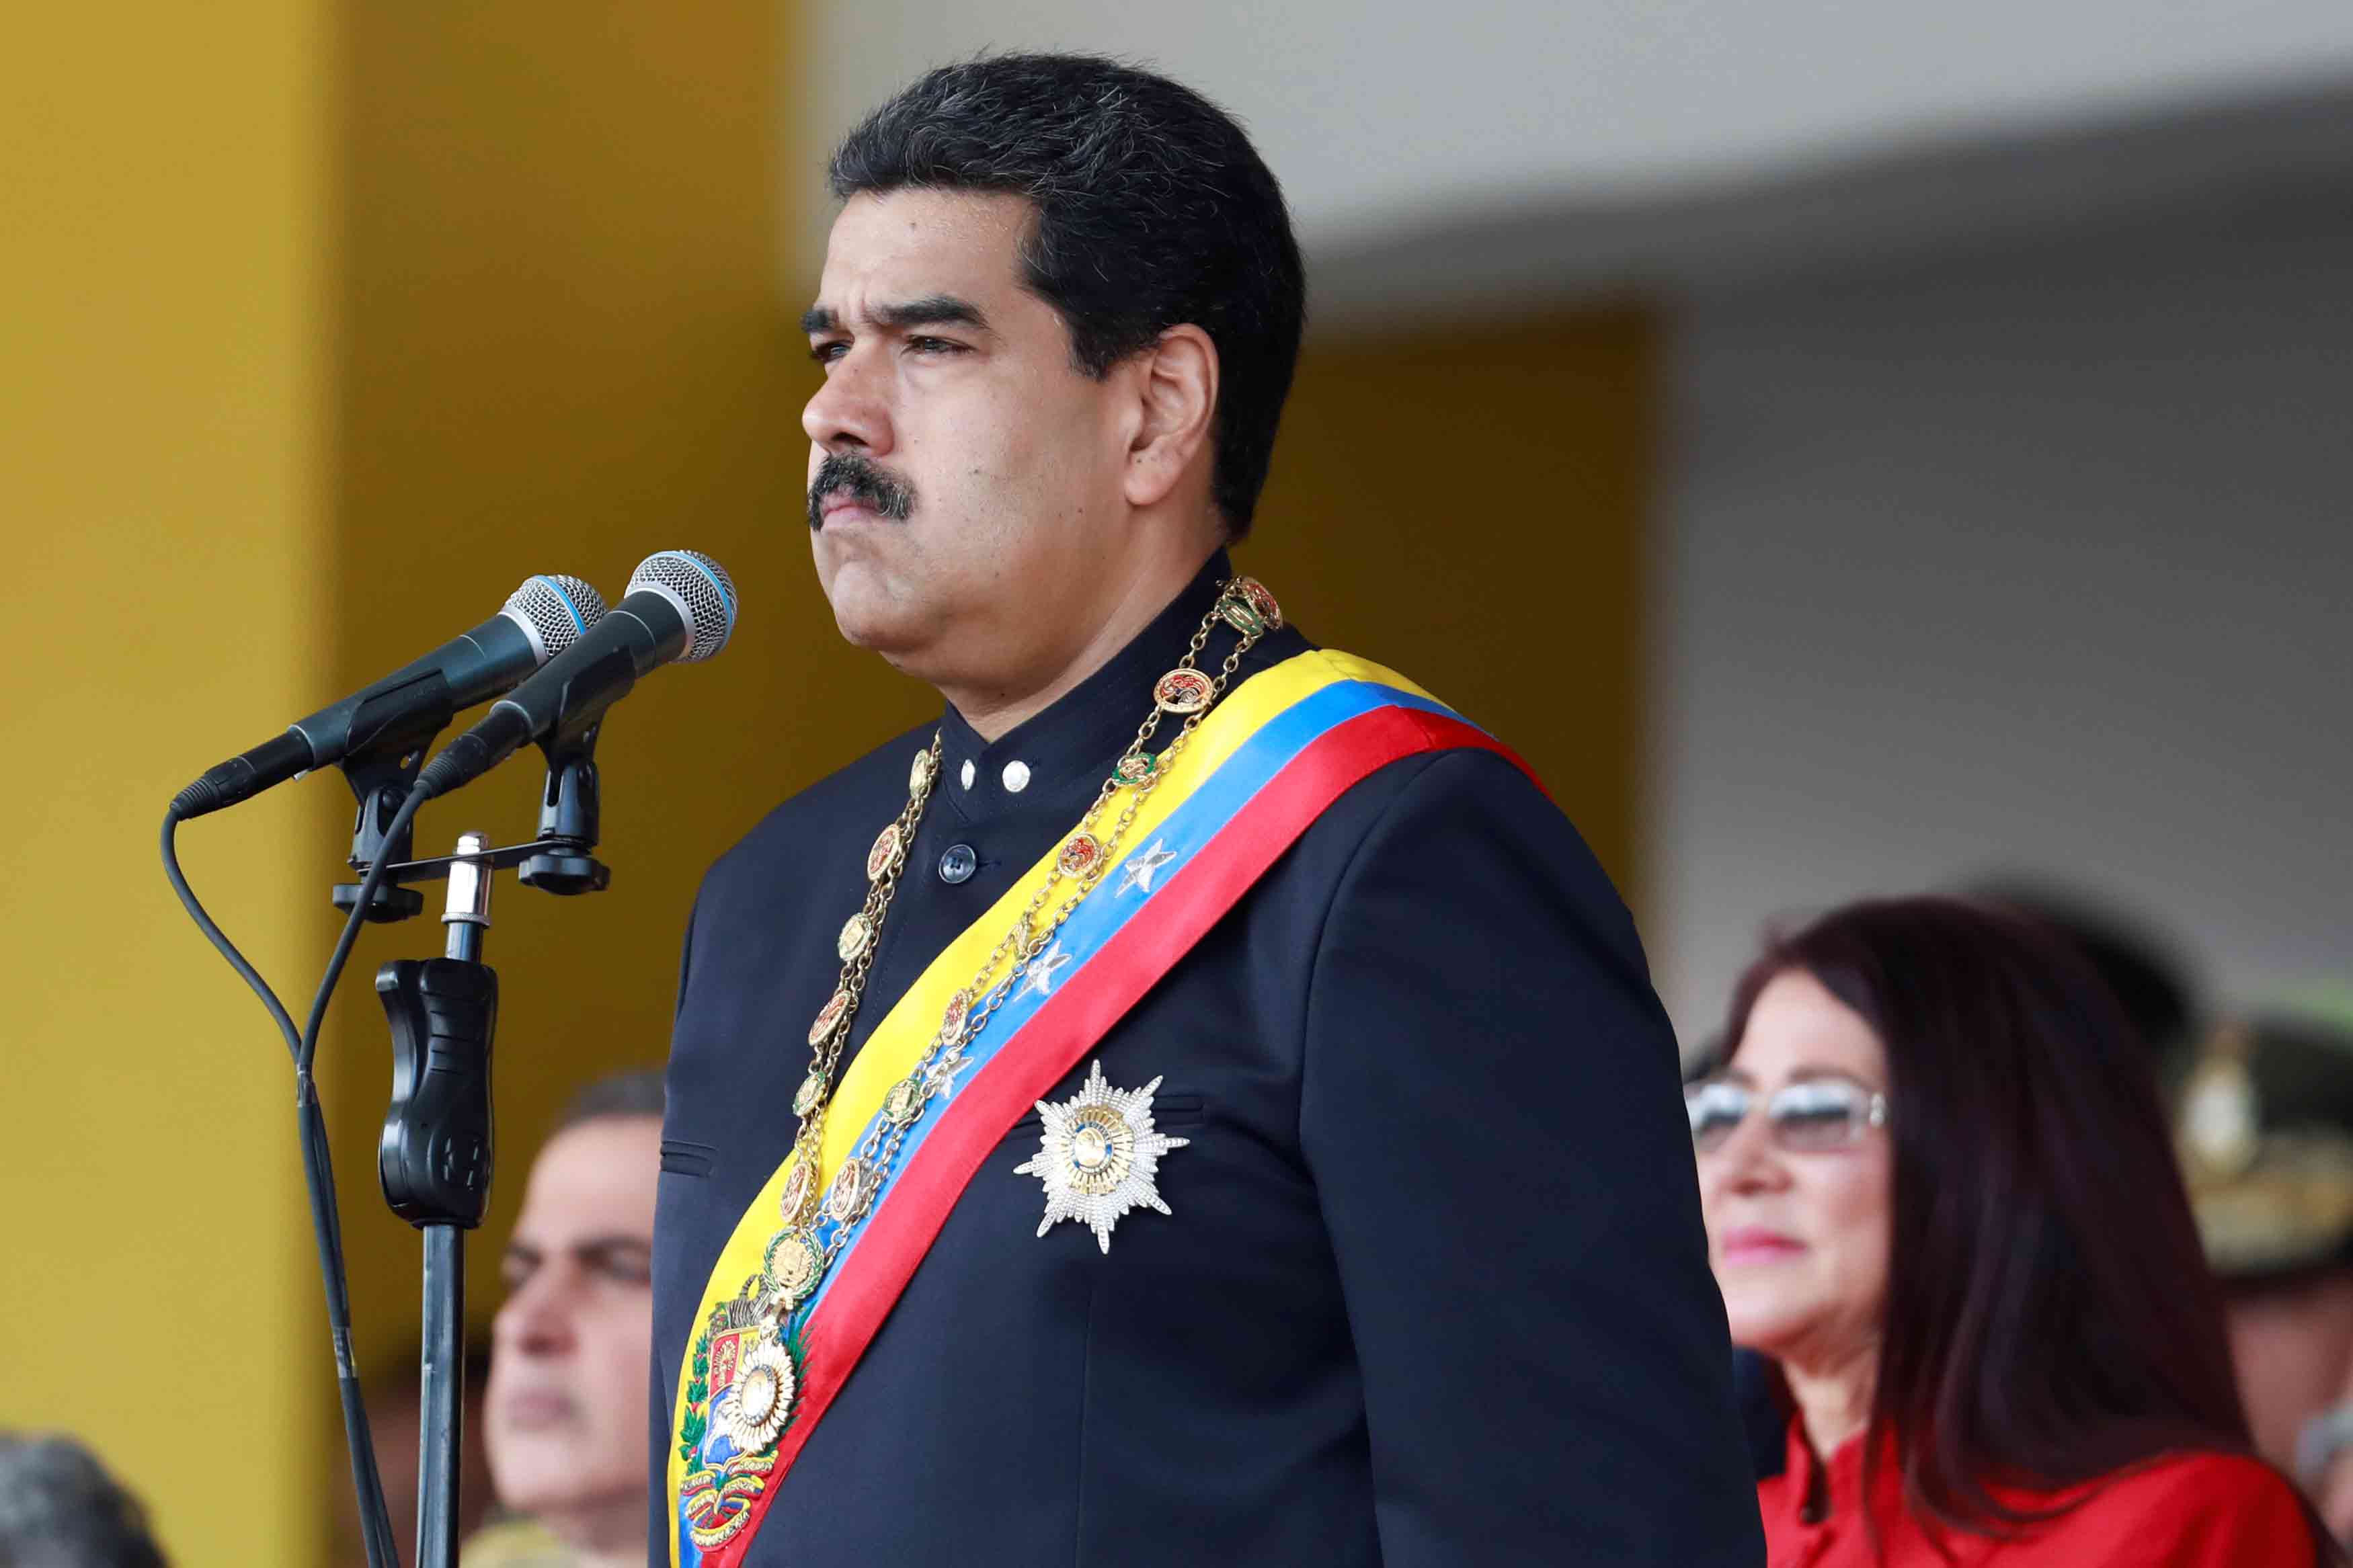 Condena unánime internacional por el asalto al Parlamento de Venezuela 1